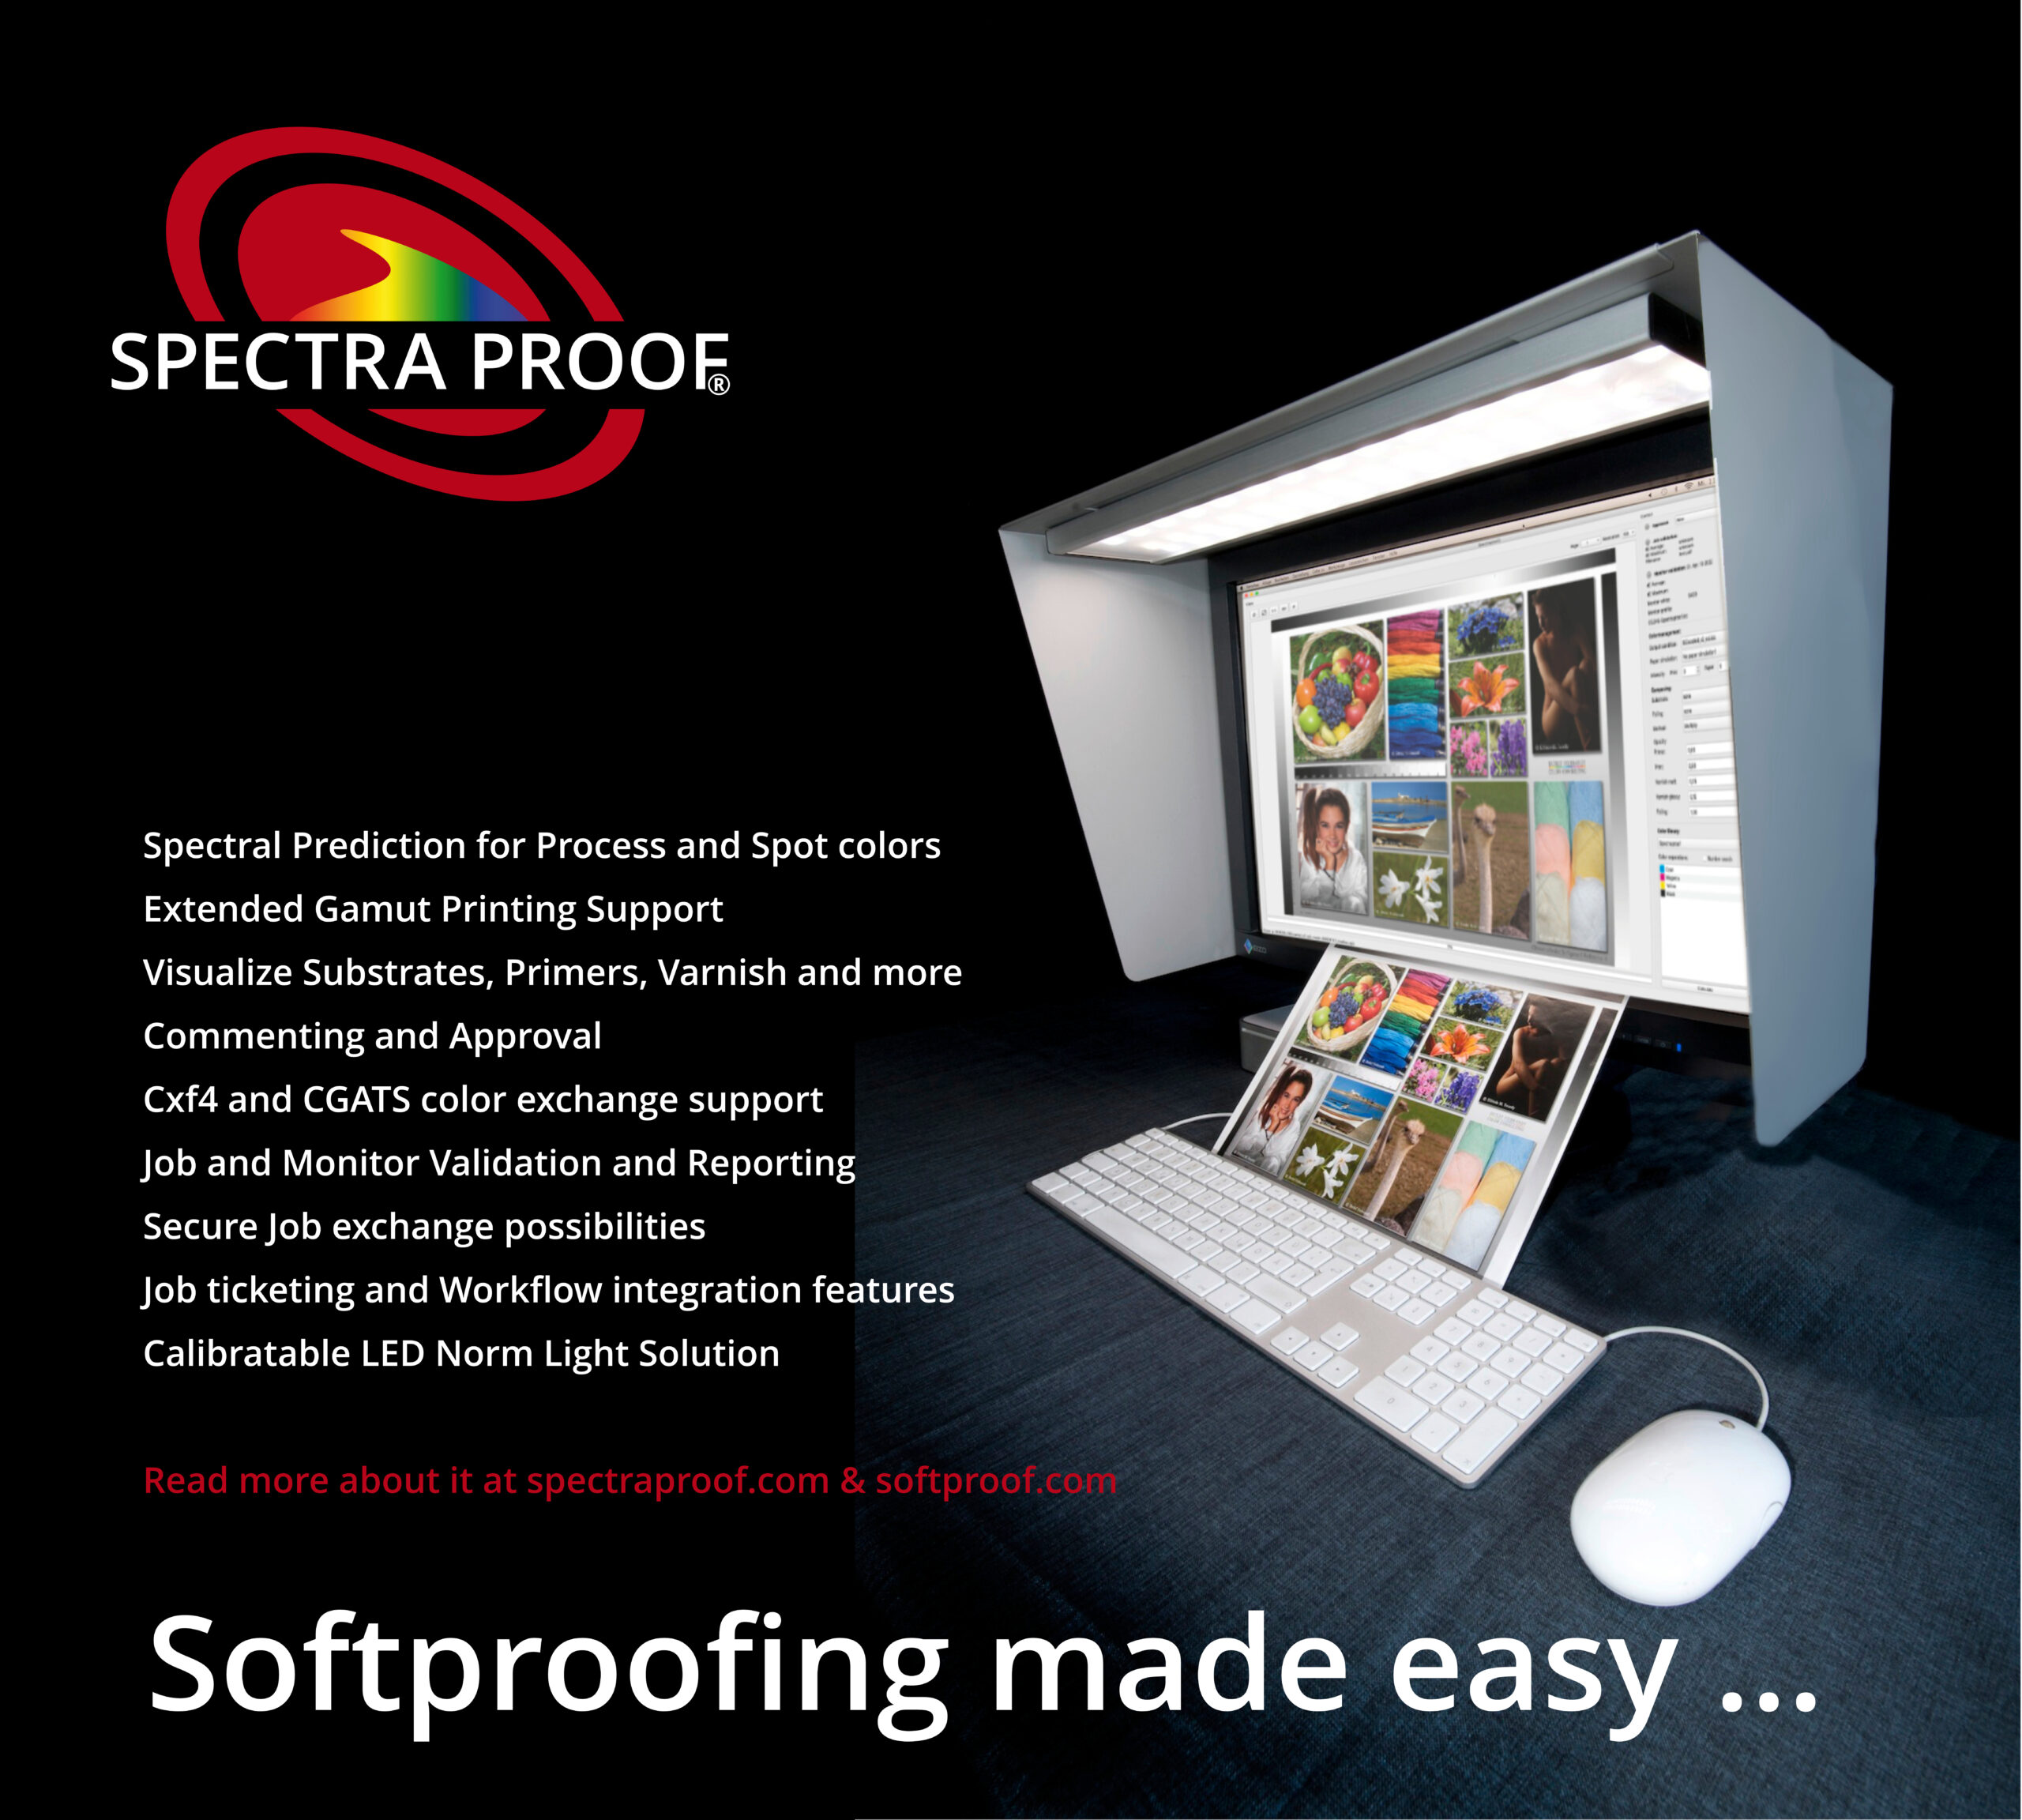 Rozwiązanie Spectraproof Softproof z lampą Spectralight, kapturem i monitorem Softproof: Precyzyjne przewidywanie spektralne dla kolorów procesowych i punktowych